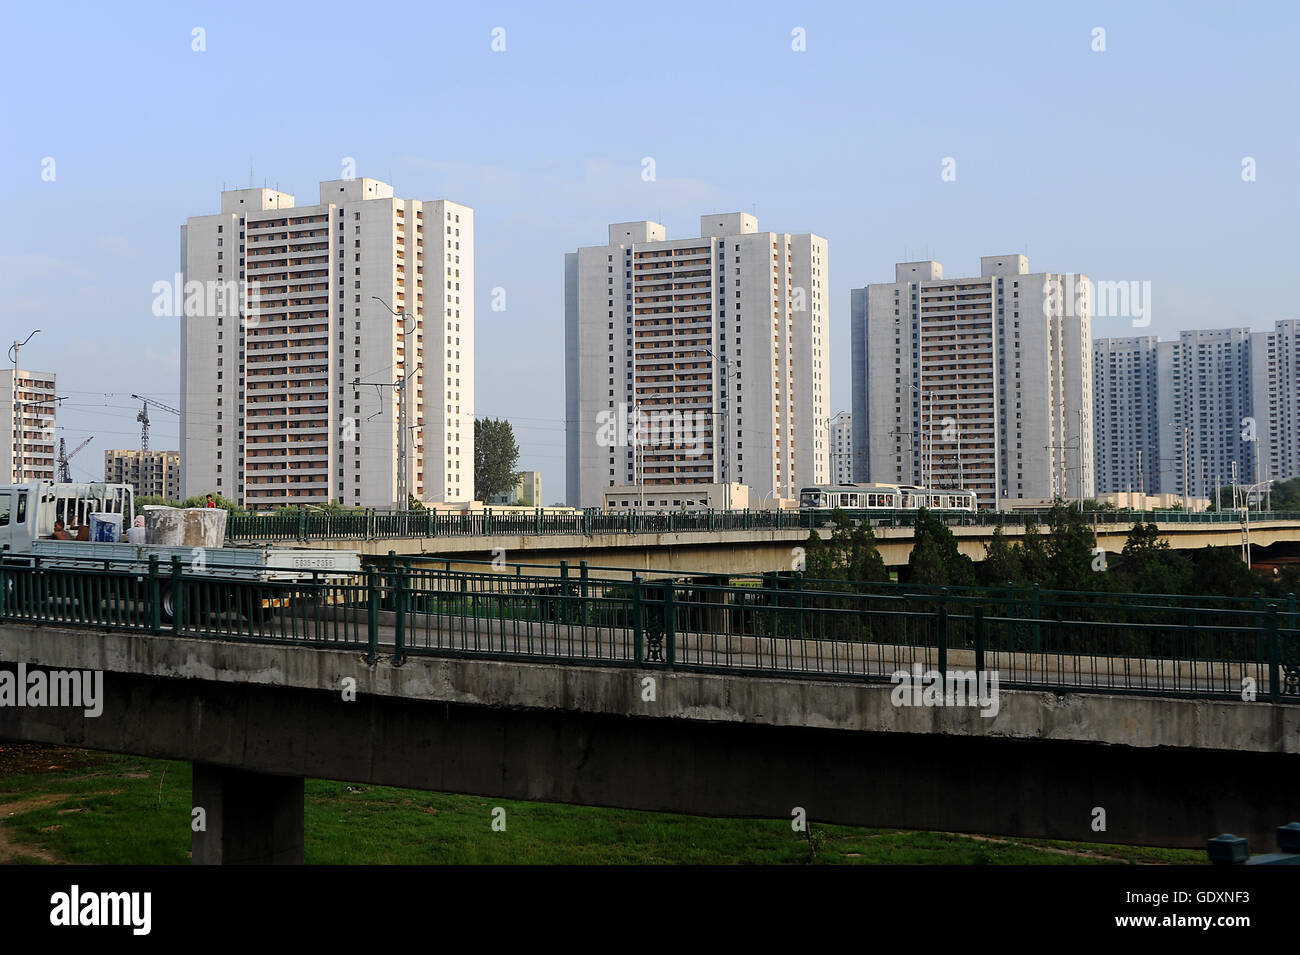 Apartment blocks in Pyongyang Stock Photo